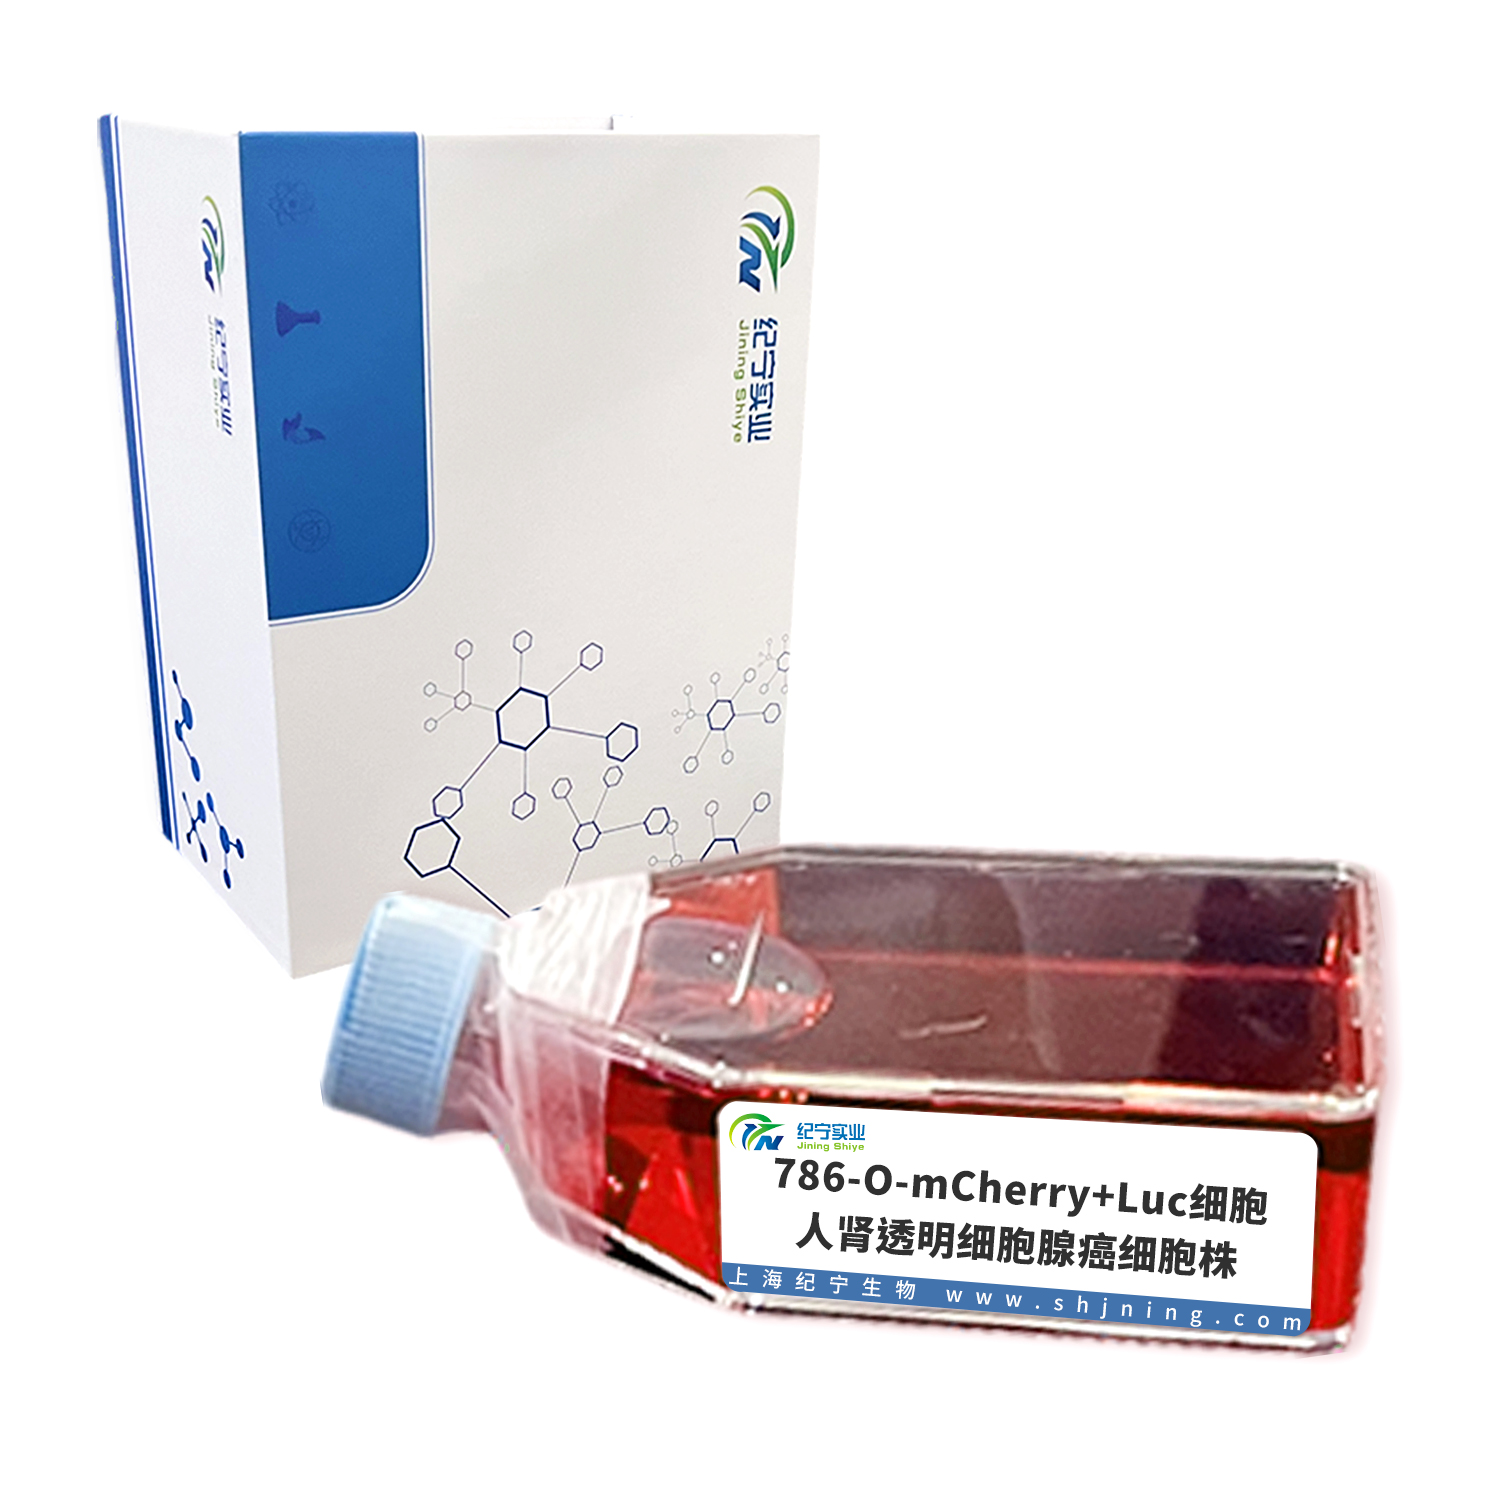 786-O-mCherry+Luc细胞＿人肾透明细胞腺癌细胞株